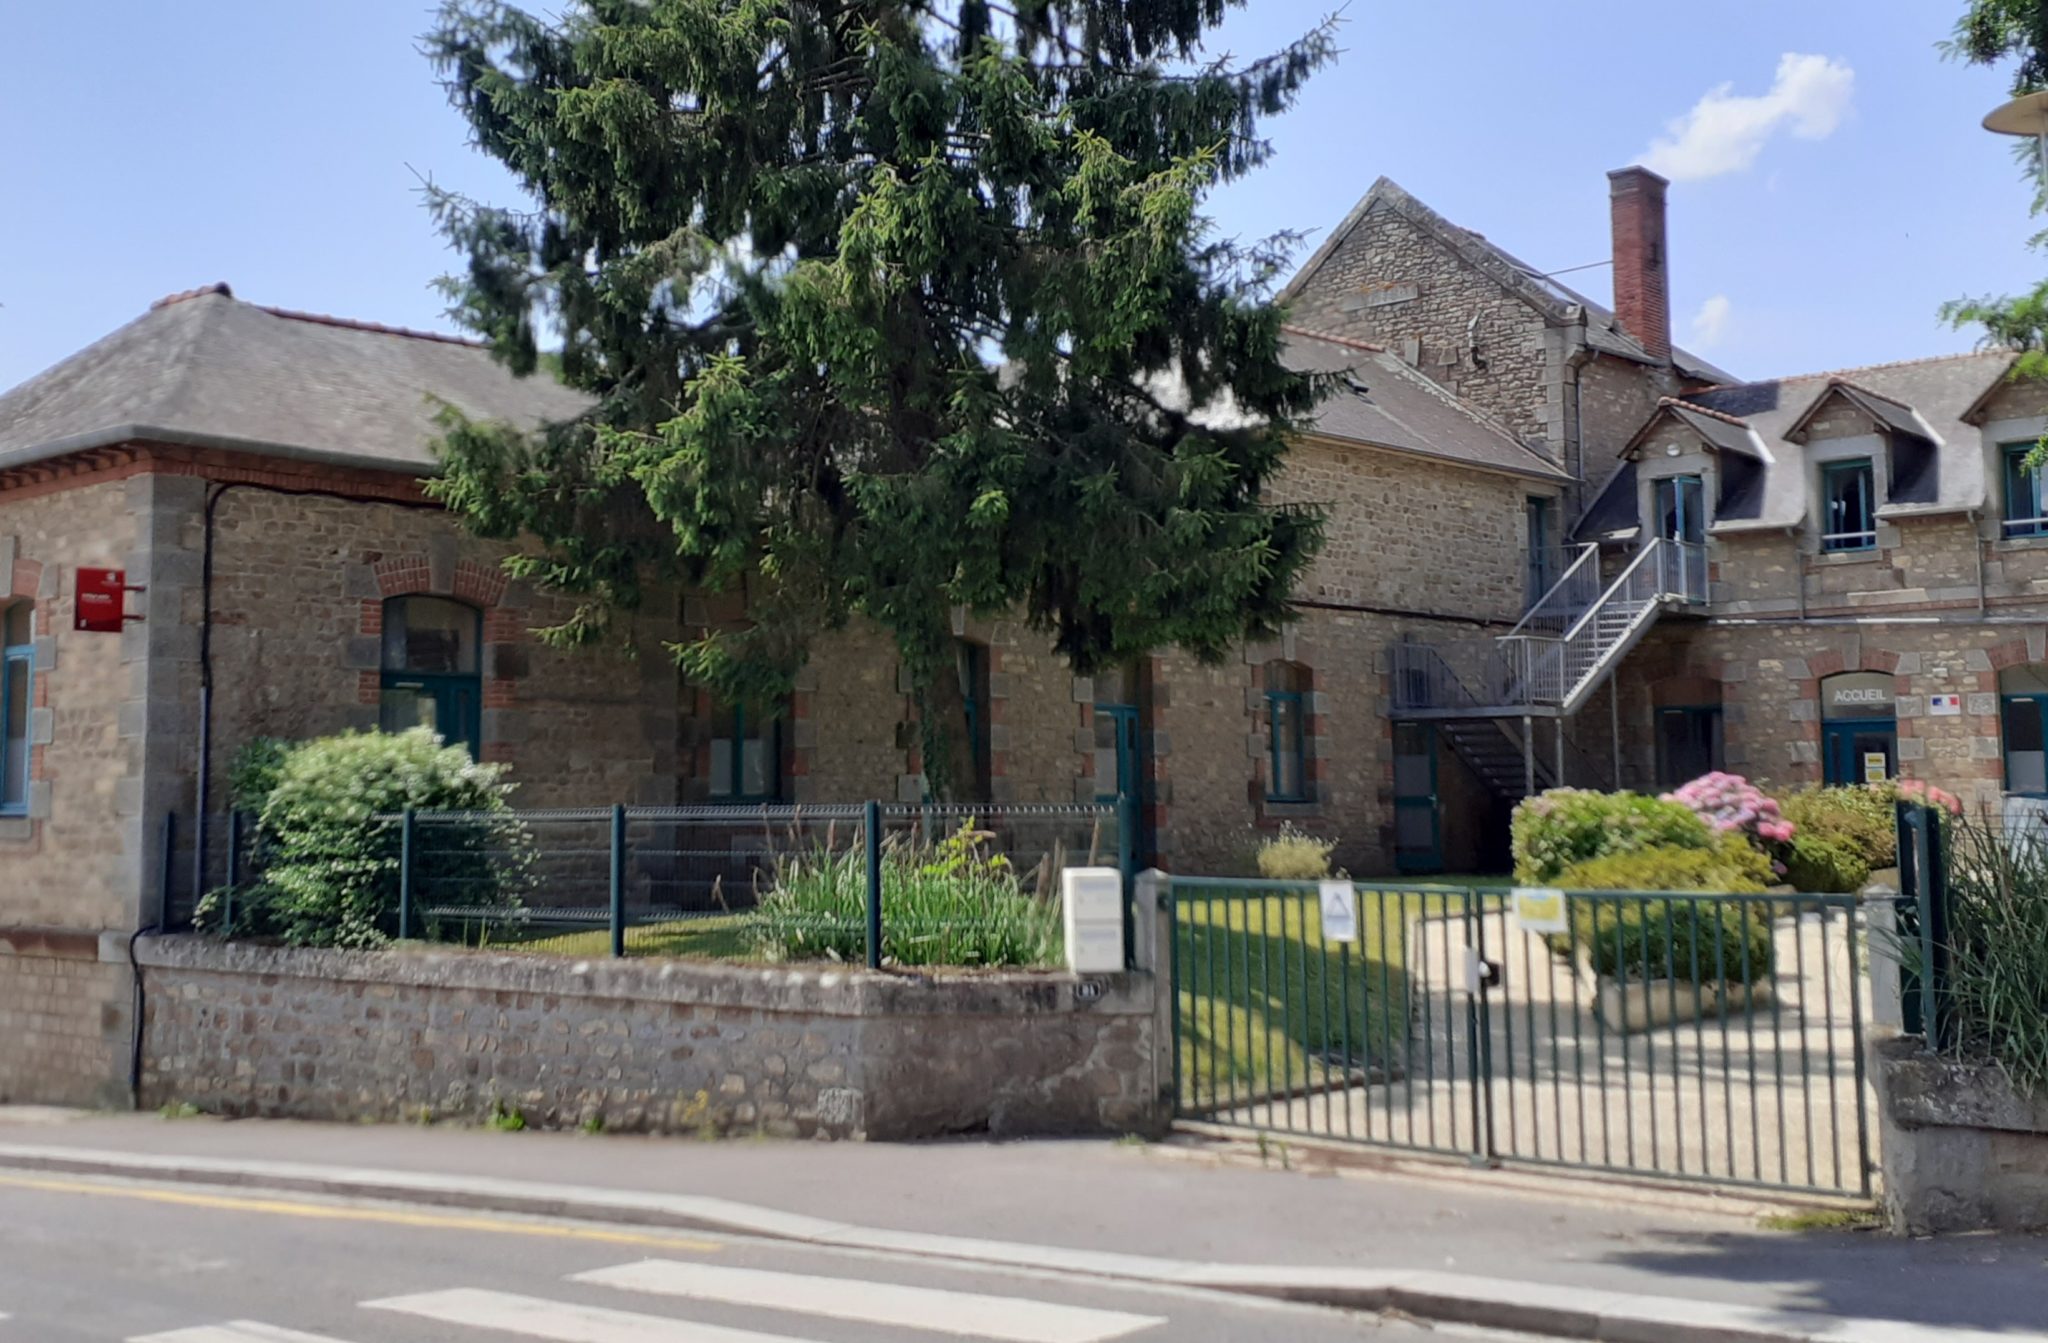 collège public françois brune avec des bâtiments en pierre des ouvertures vertes et au premier plan de la végétation arbres et fleurs